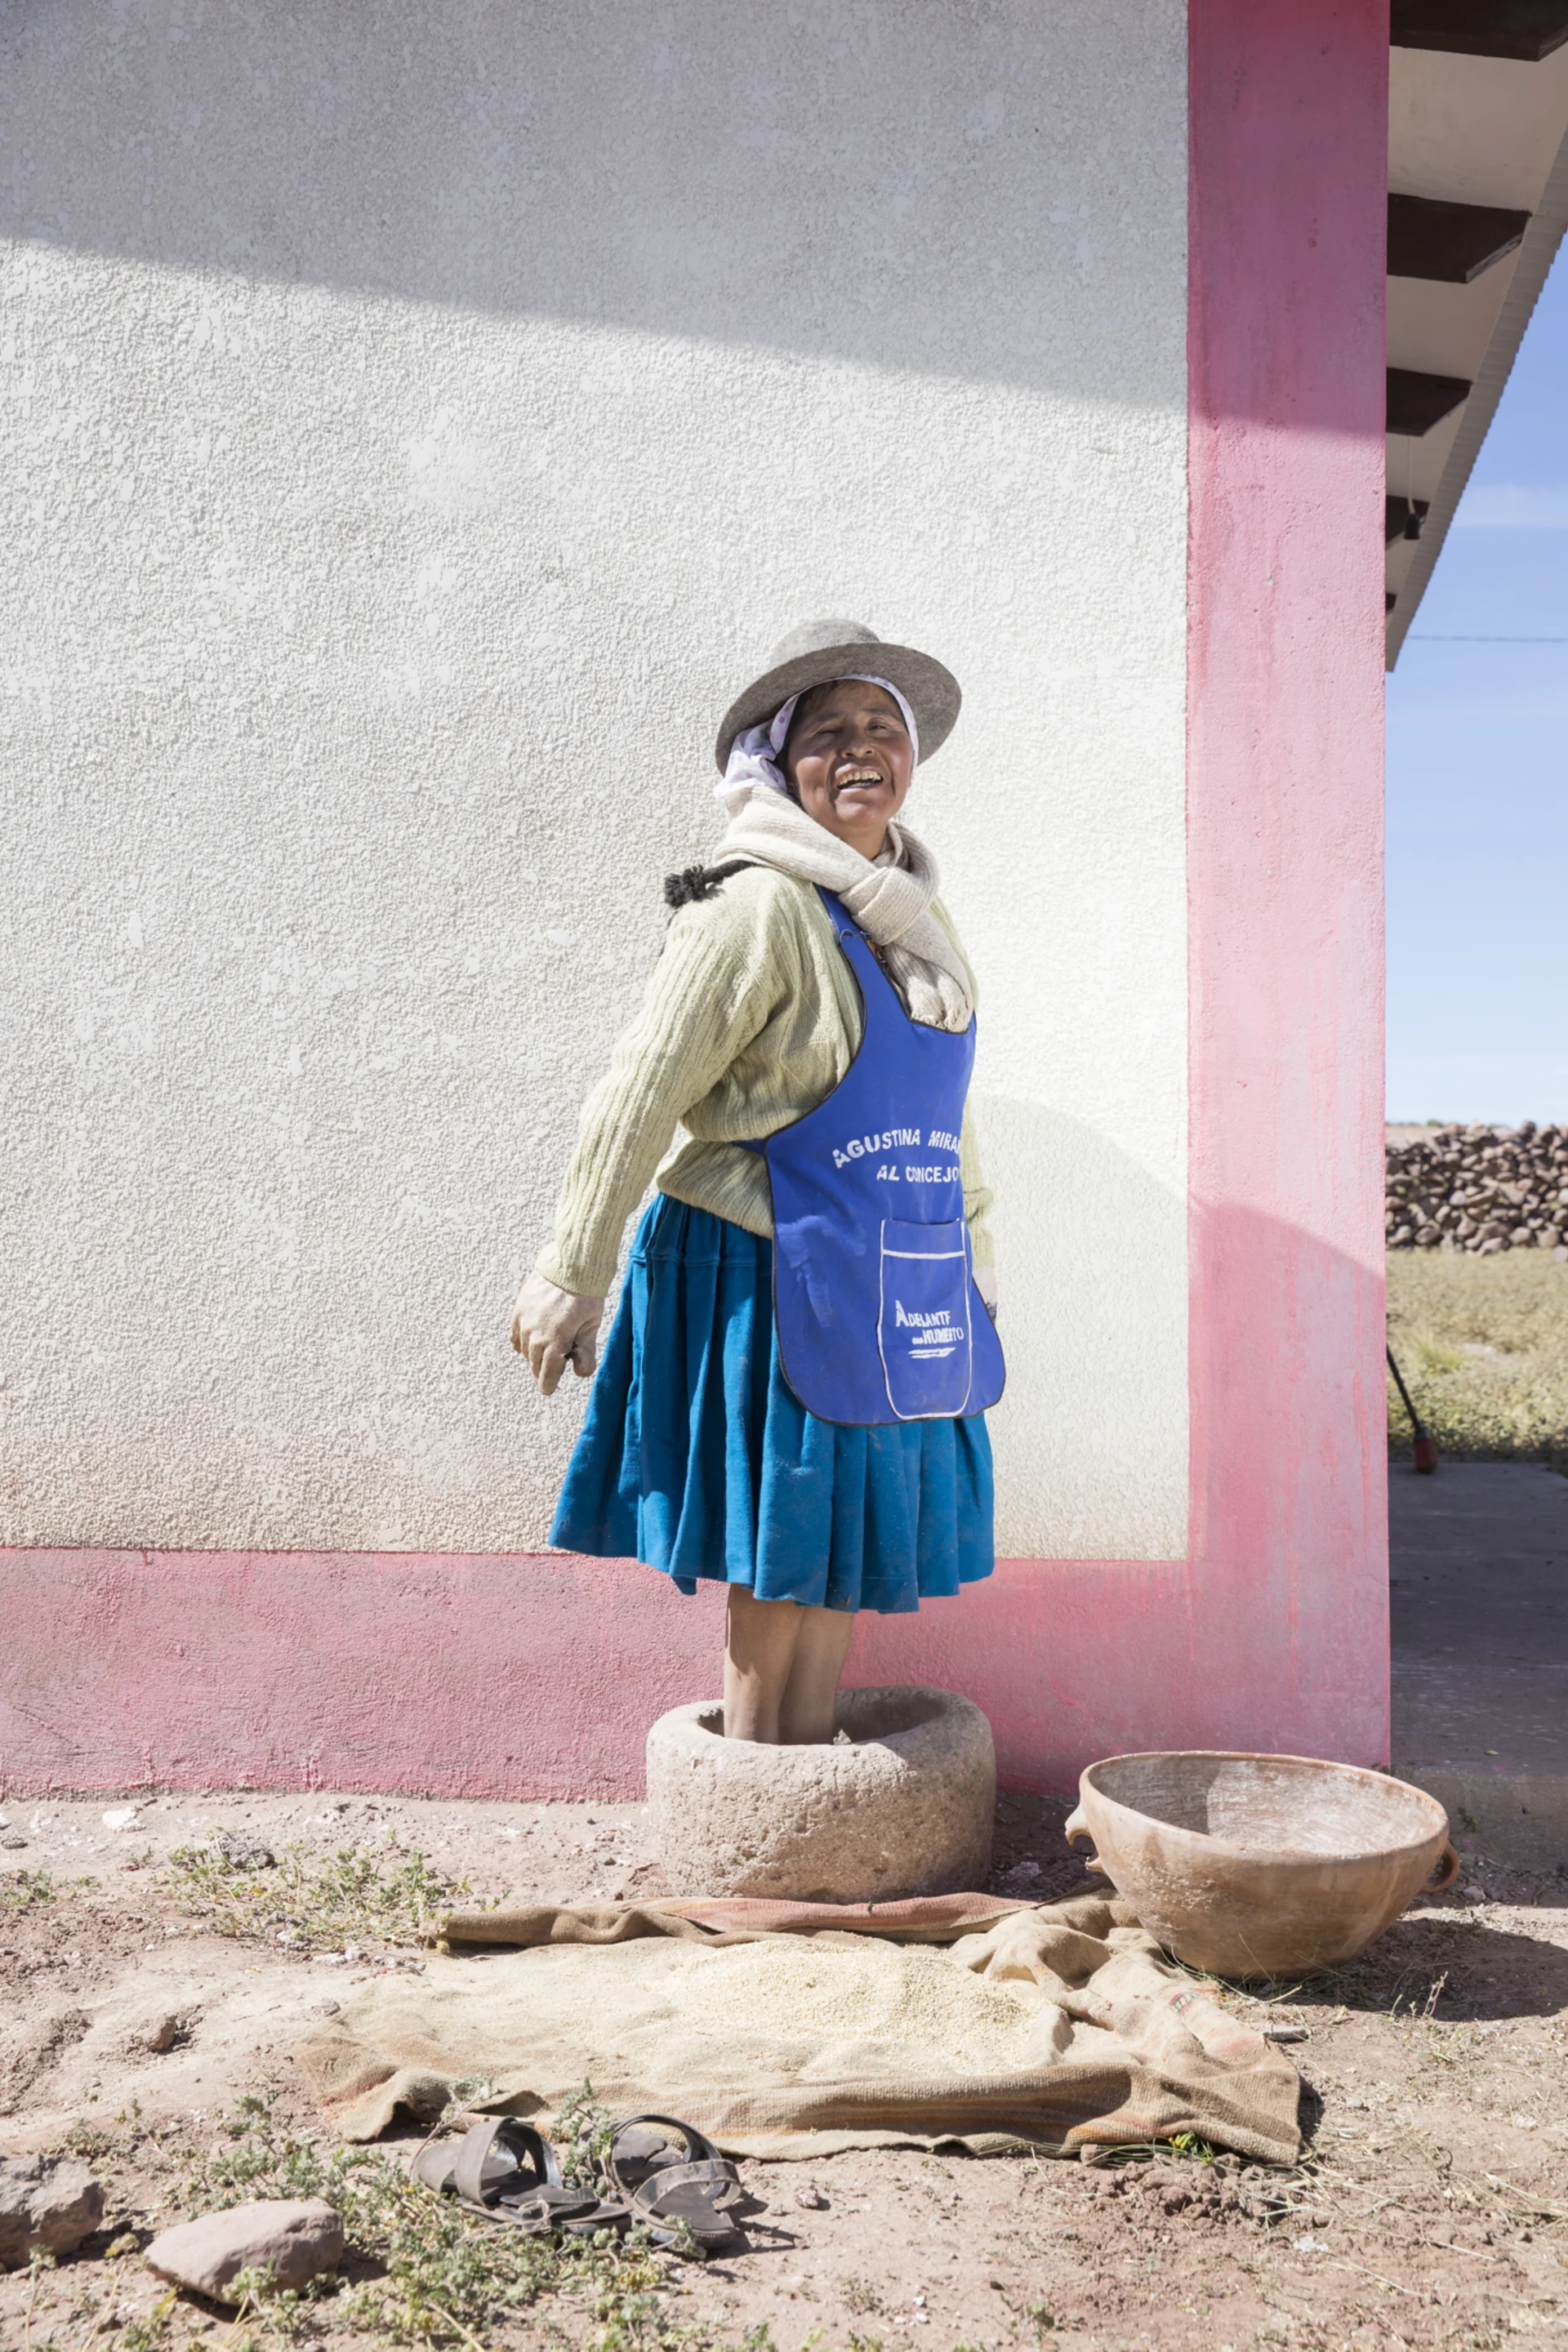 La cueilleuse et cuisinière Cecilia se tient devant un mur rose et rit devant la caméra.